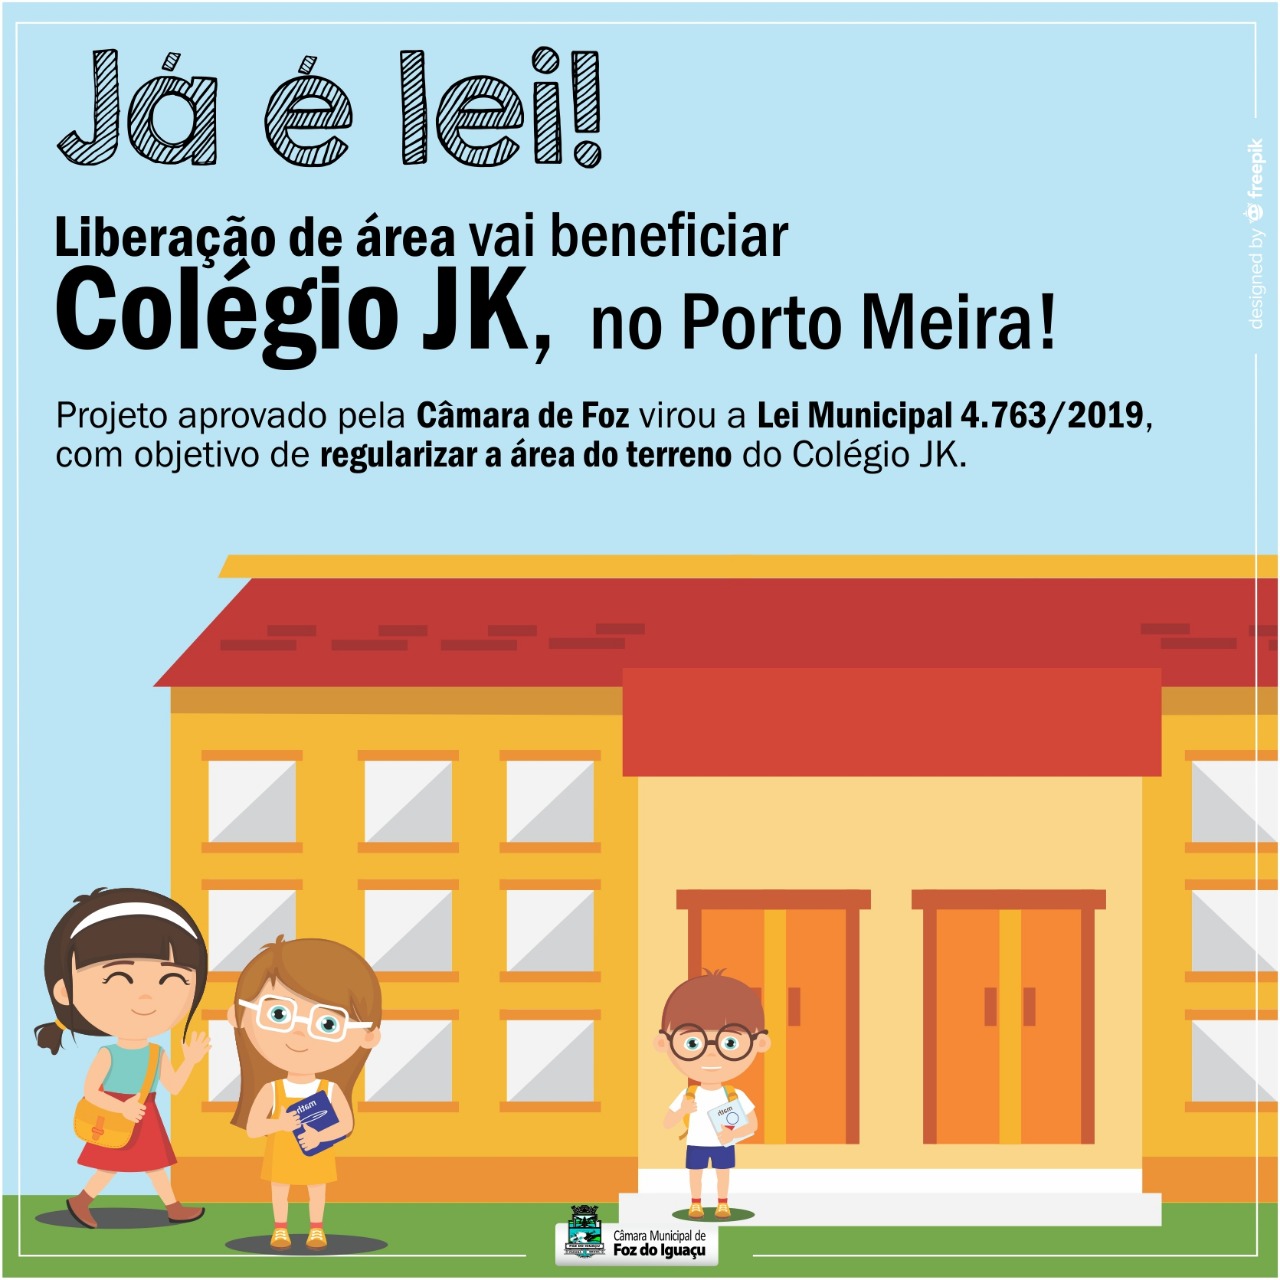 Liberação de área vai beneficiar Colégio JK, no Porto Meira